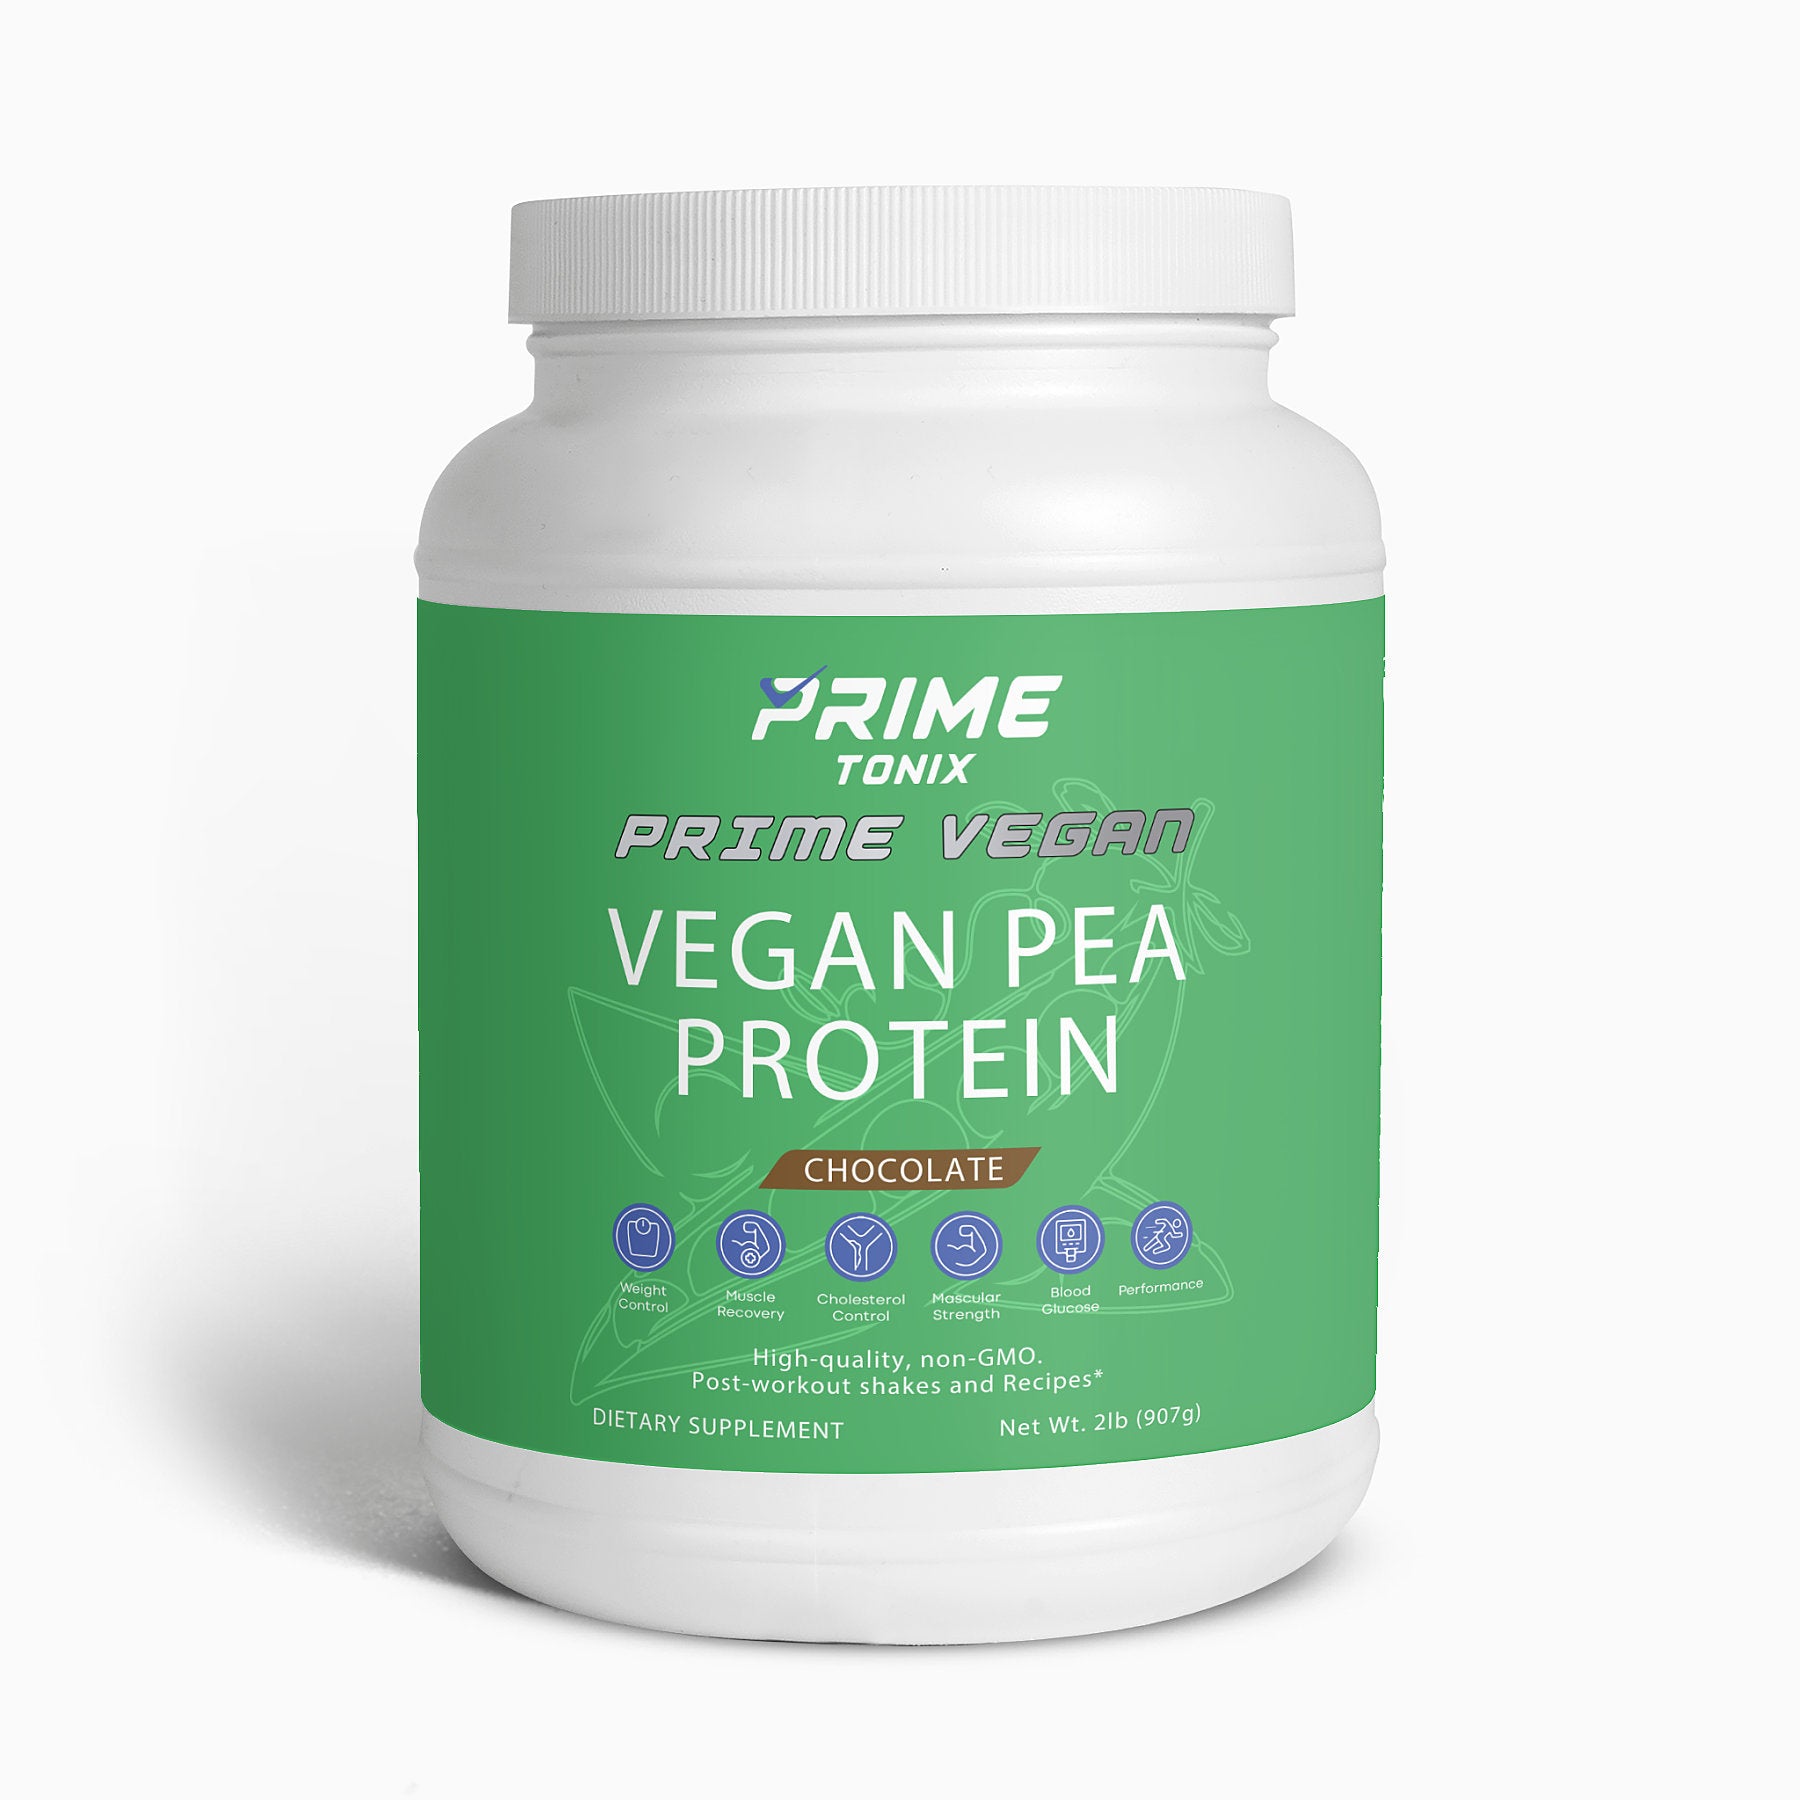 Prime Vegan Pea Protein (Chocolate)